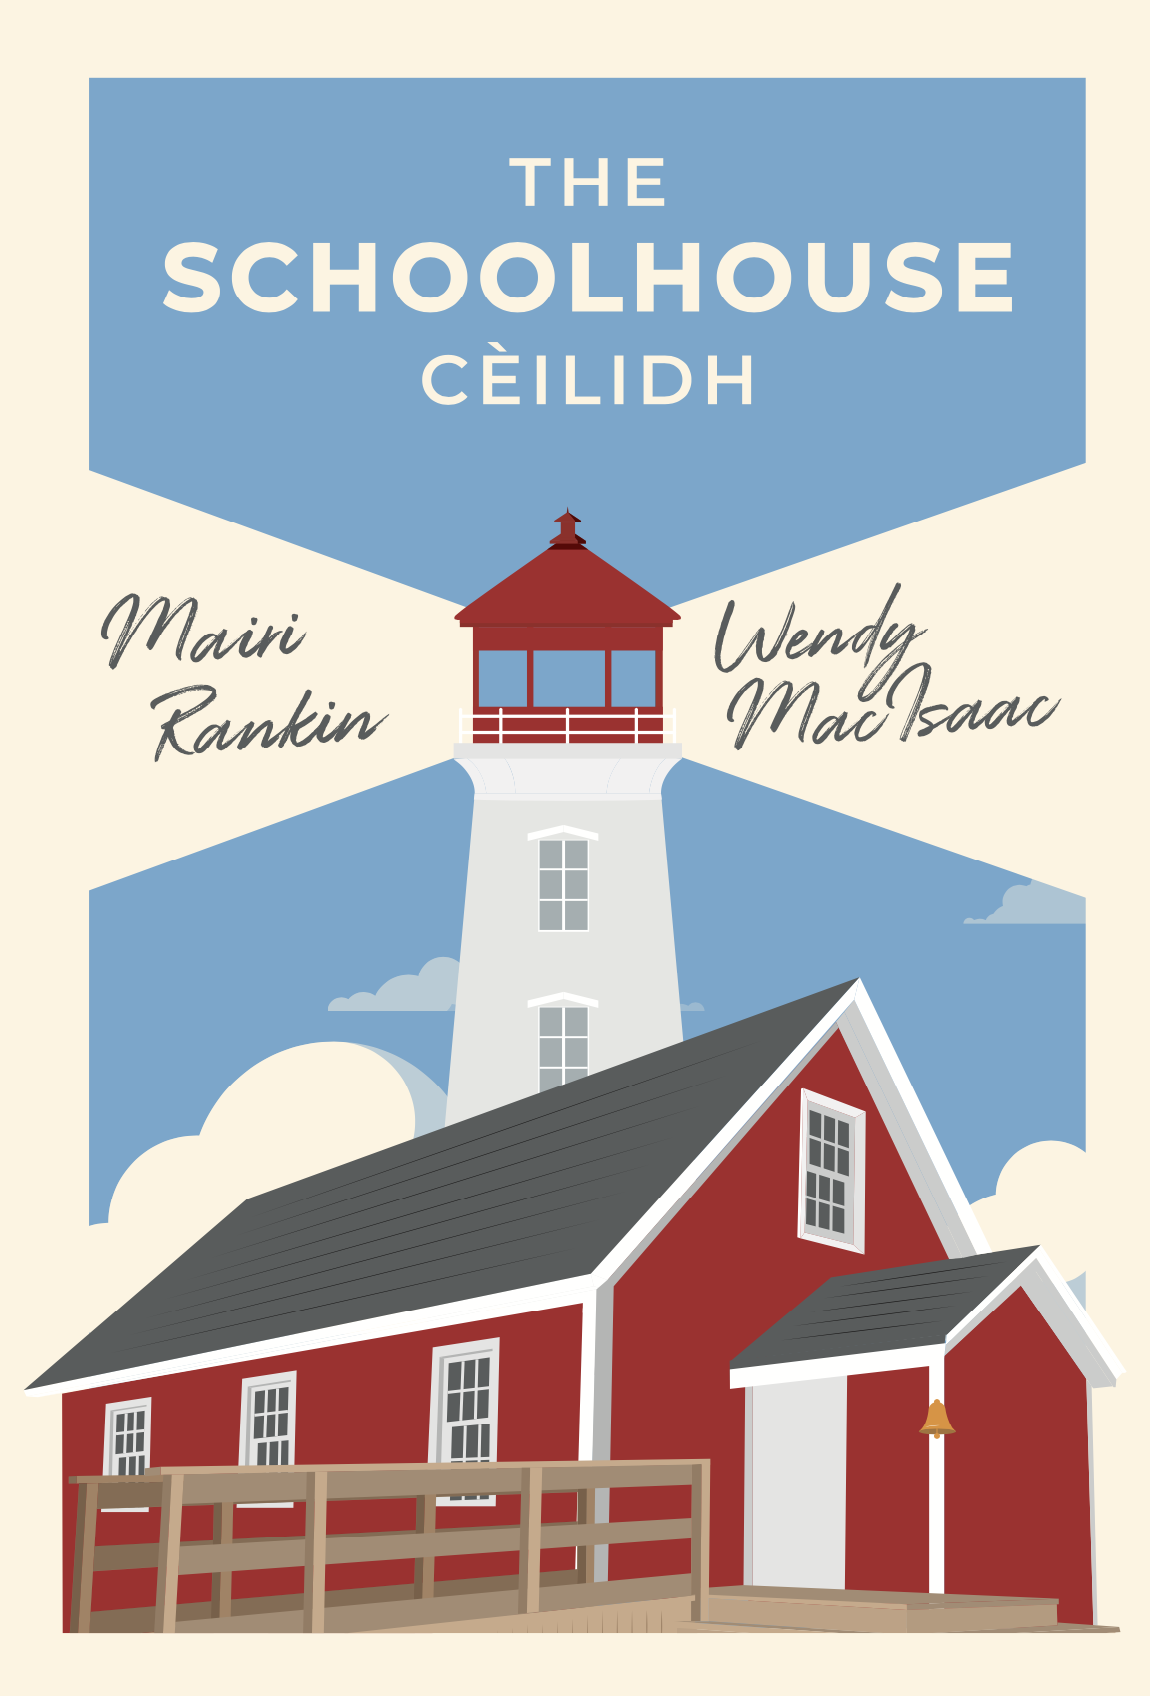 The SchoolHouse Ceilidh